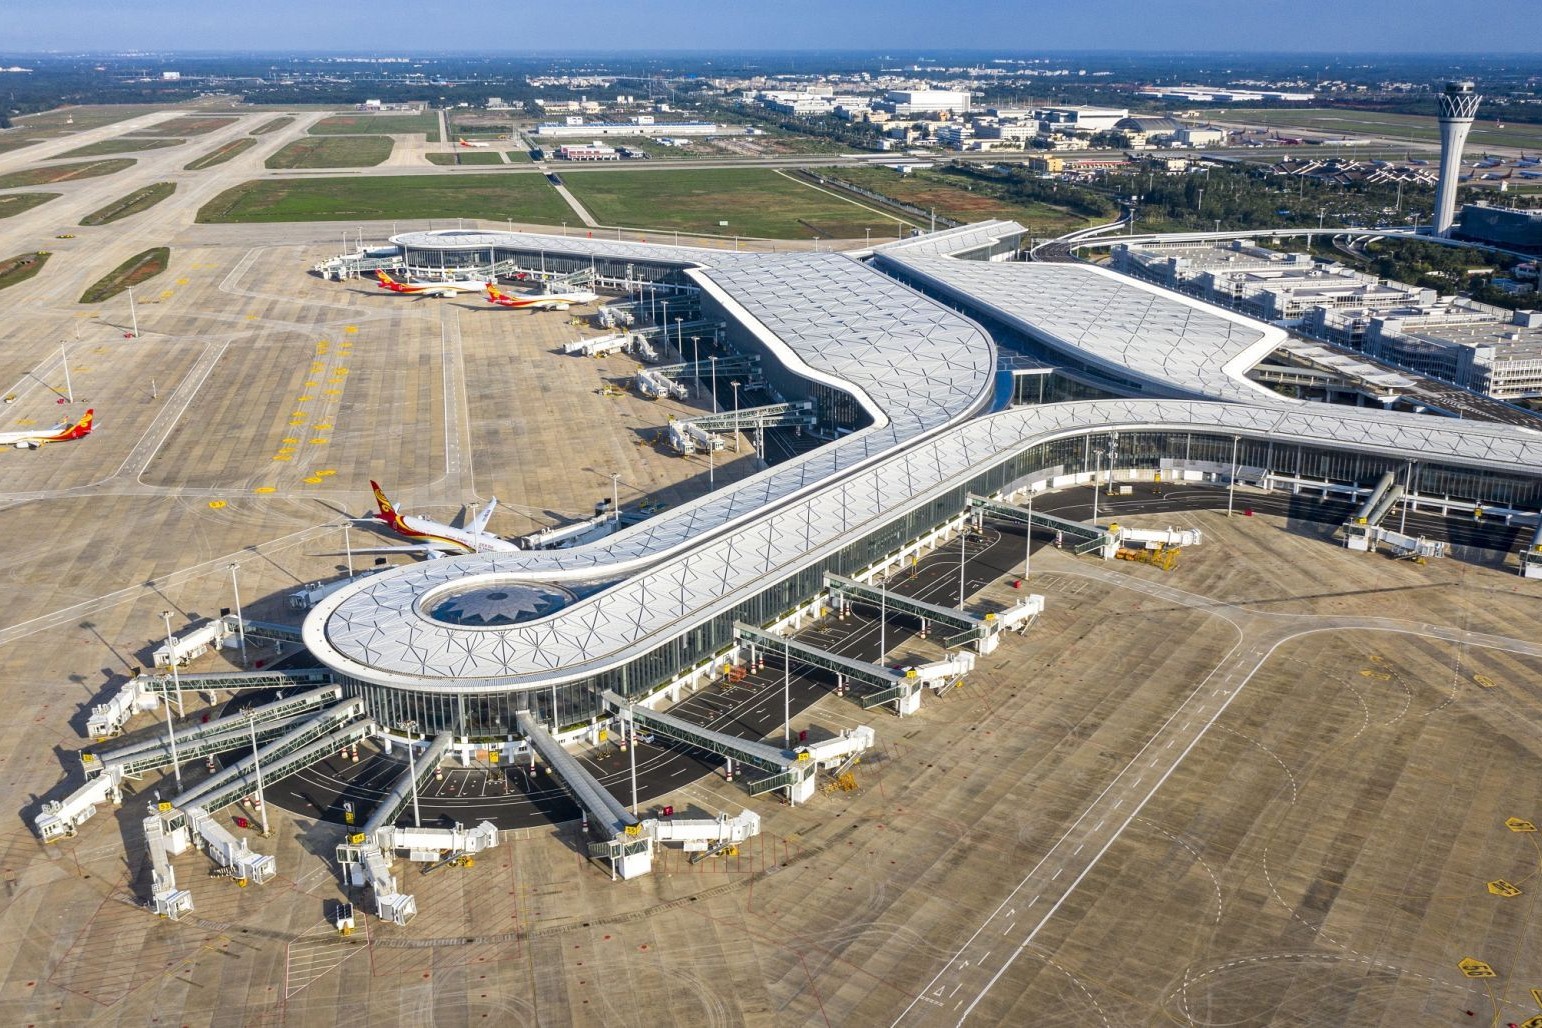 海南机场接受61家机构调研 透露临空产业转型进展 | 上市公司在海南